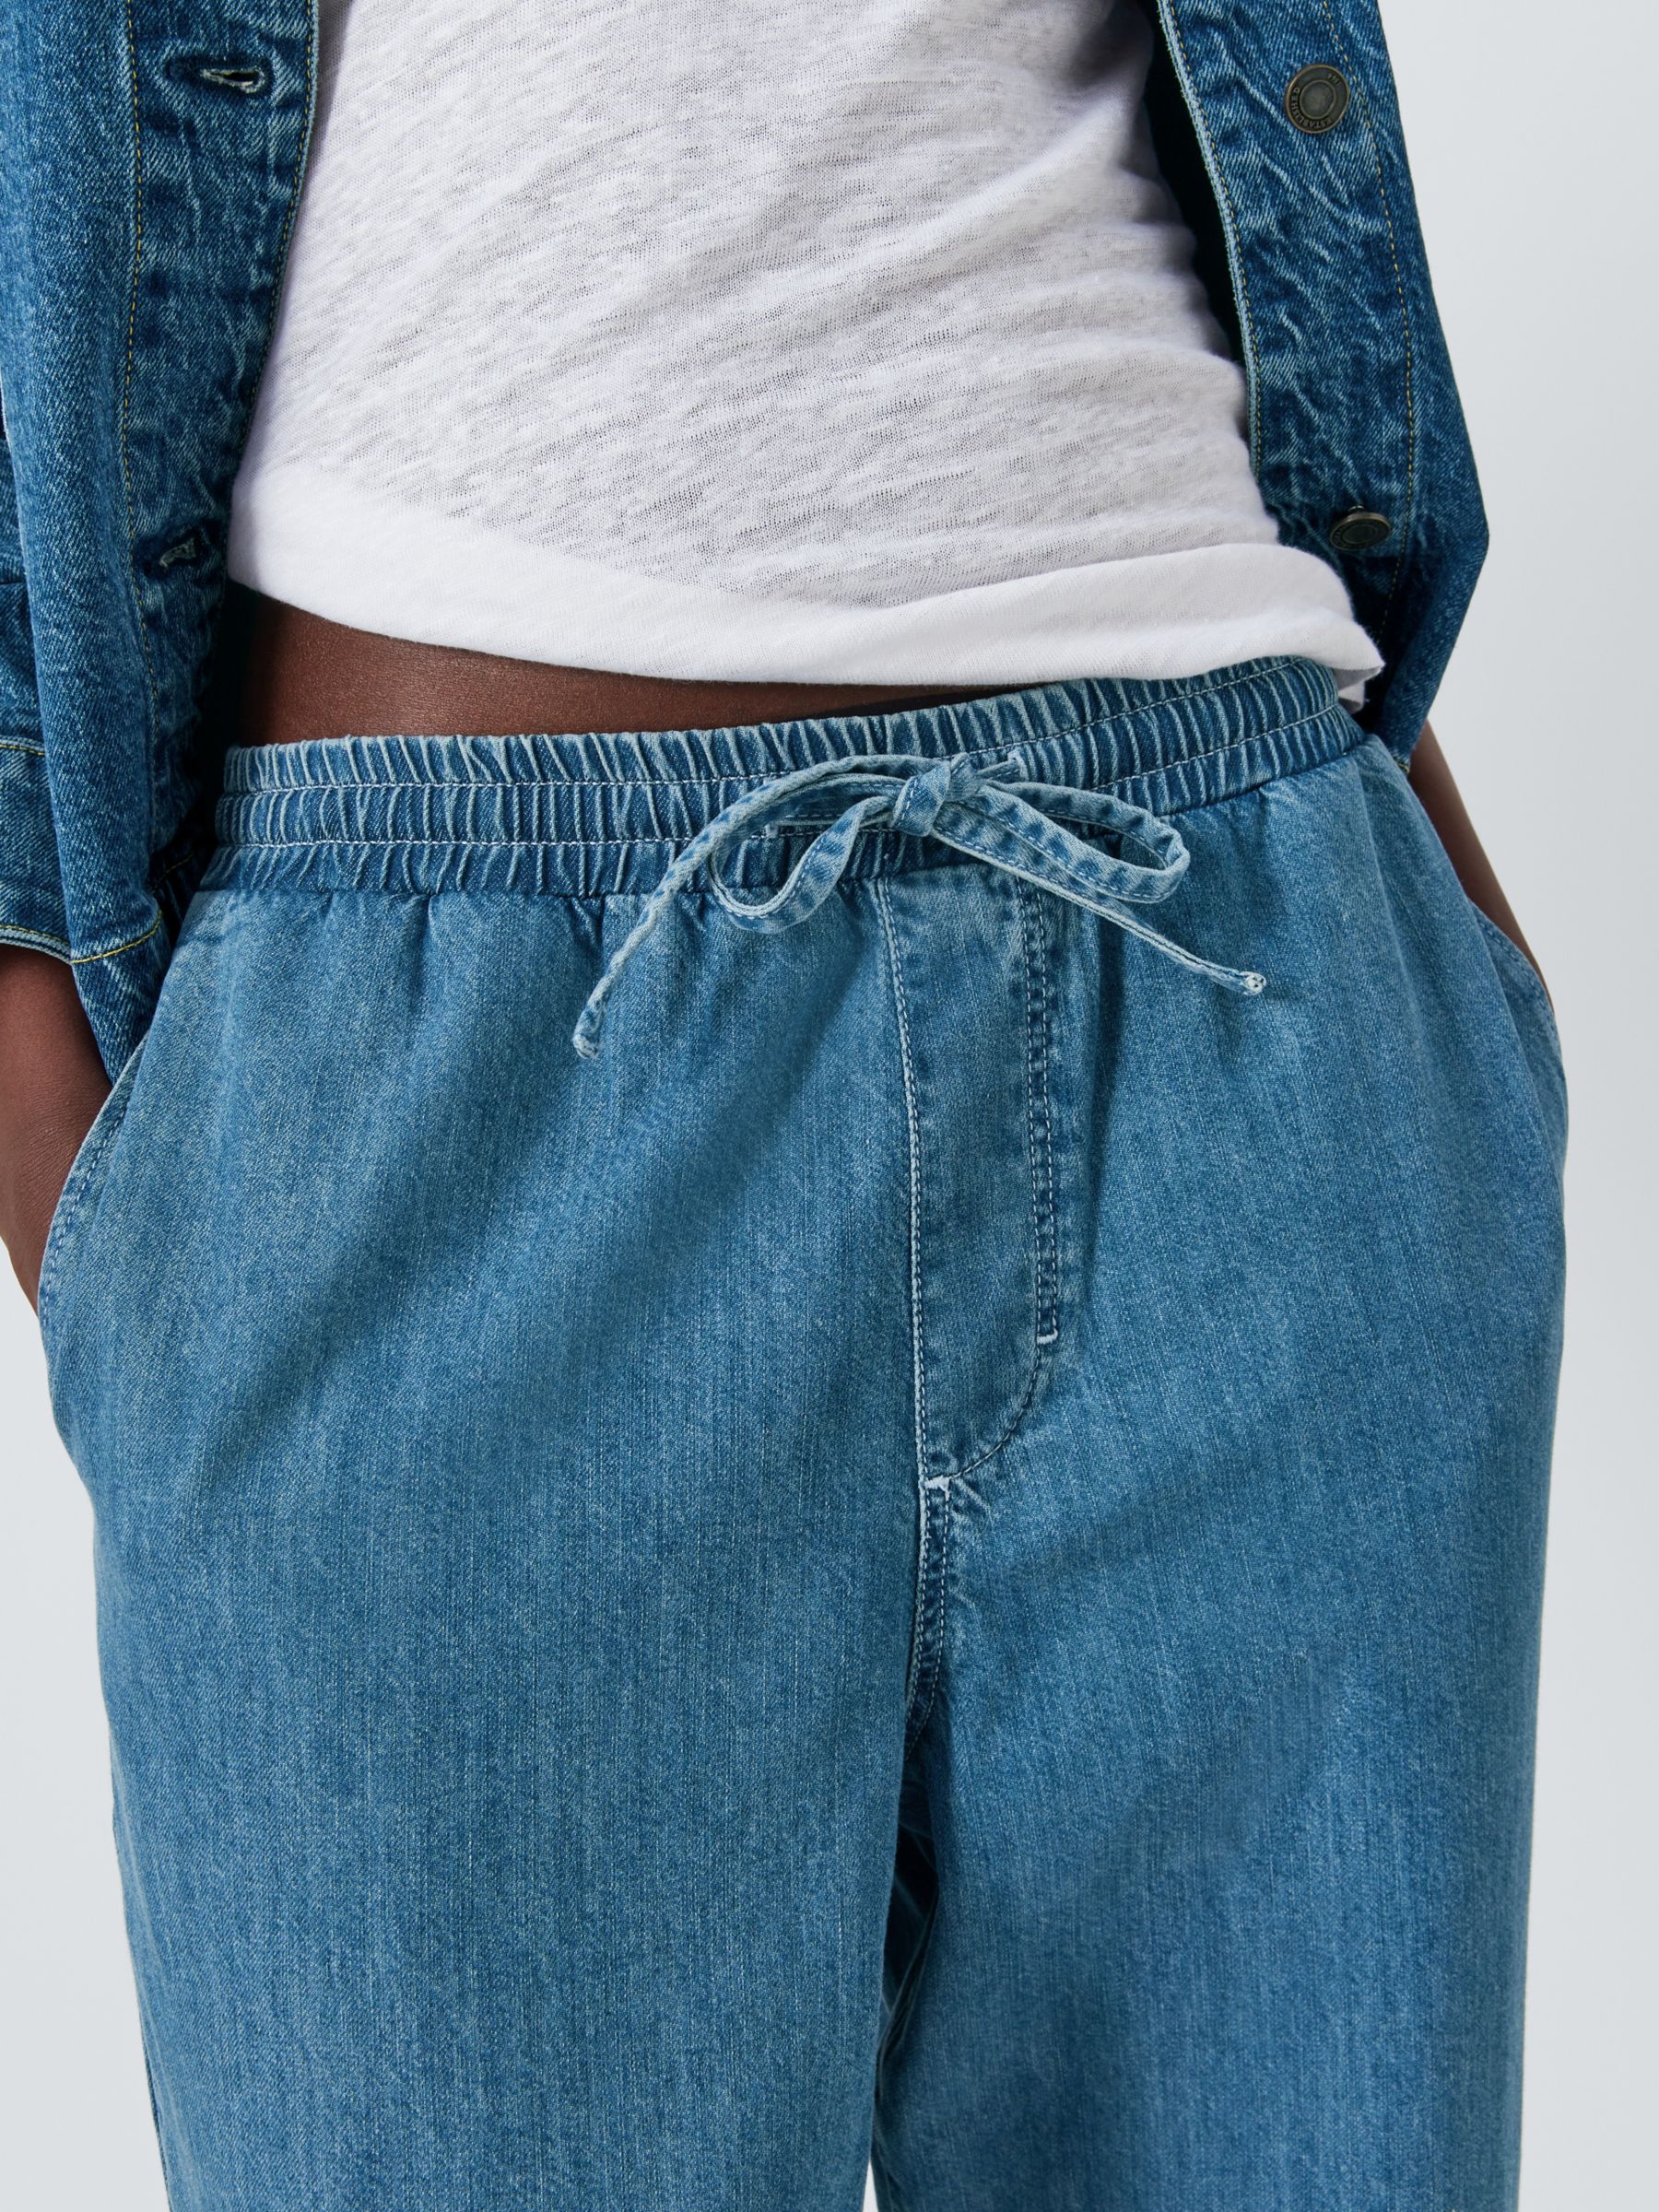 Buy John Lewis Drawstring Jeans, Mid Wash Online at johnlewis.com